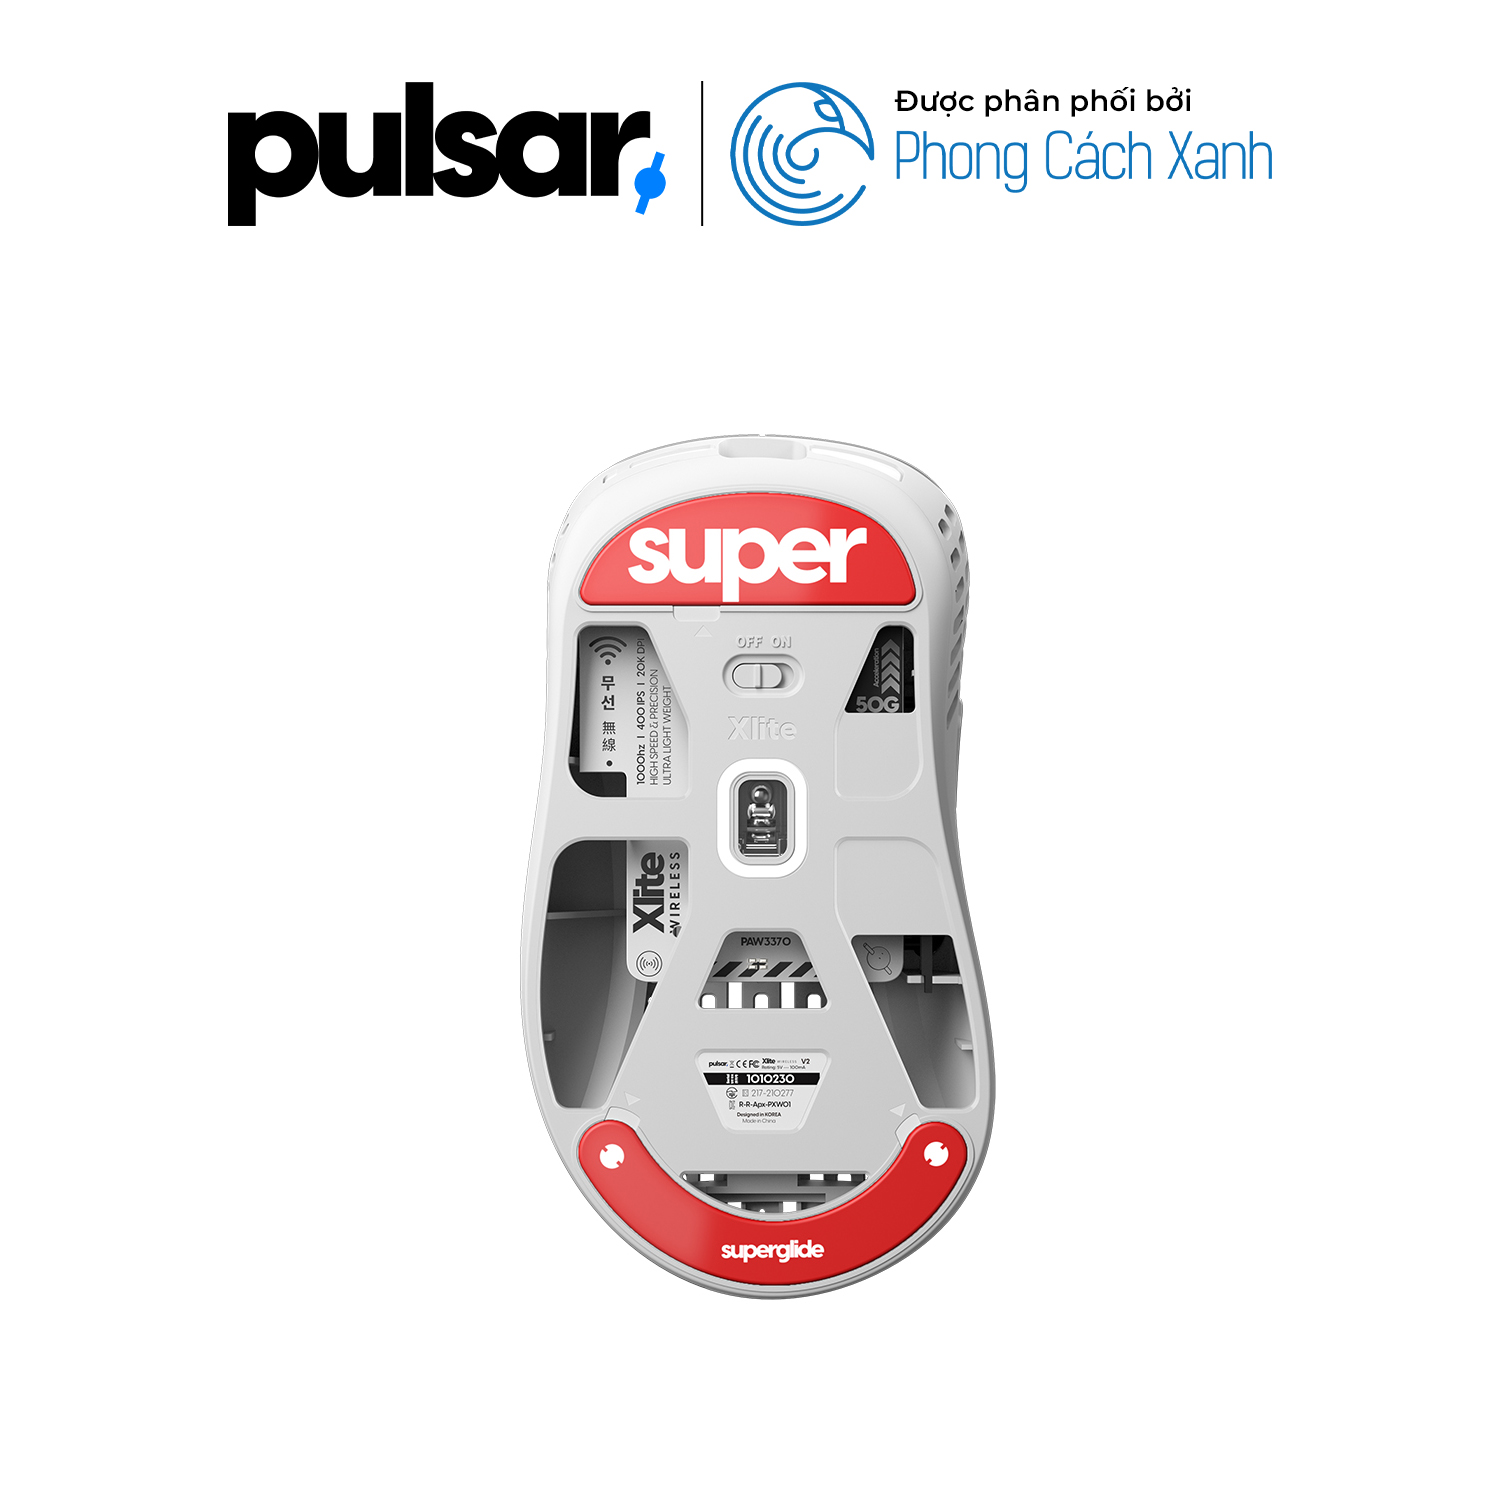 Feet chuột Pulsar Superglide 2 - Pulsar Xlite Wireless Series - Hàng Chính Hãng